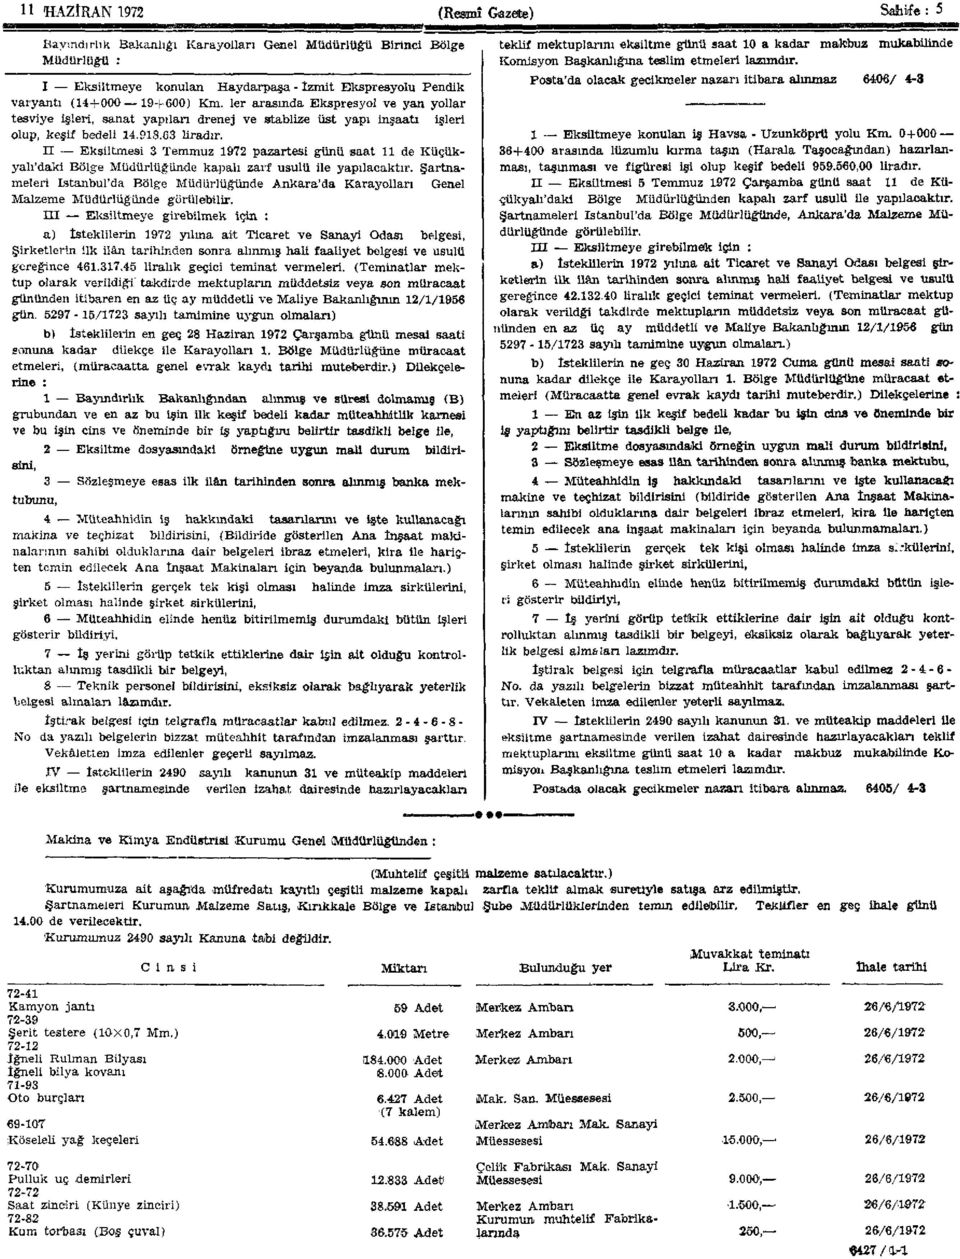 H Eksiltmesi 3 Temmuz 1972 pazartesi günü saat 11 de Küçükyalı'daki Bölge Müdürlüğünde kapalı zarf usulü ile yapılacaktır.